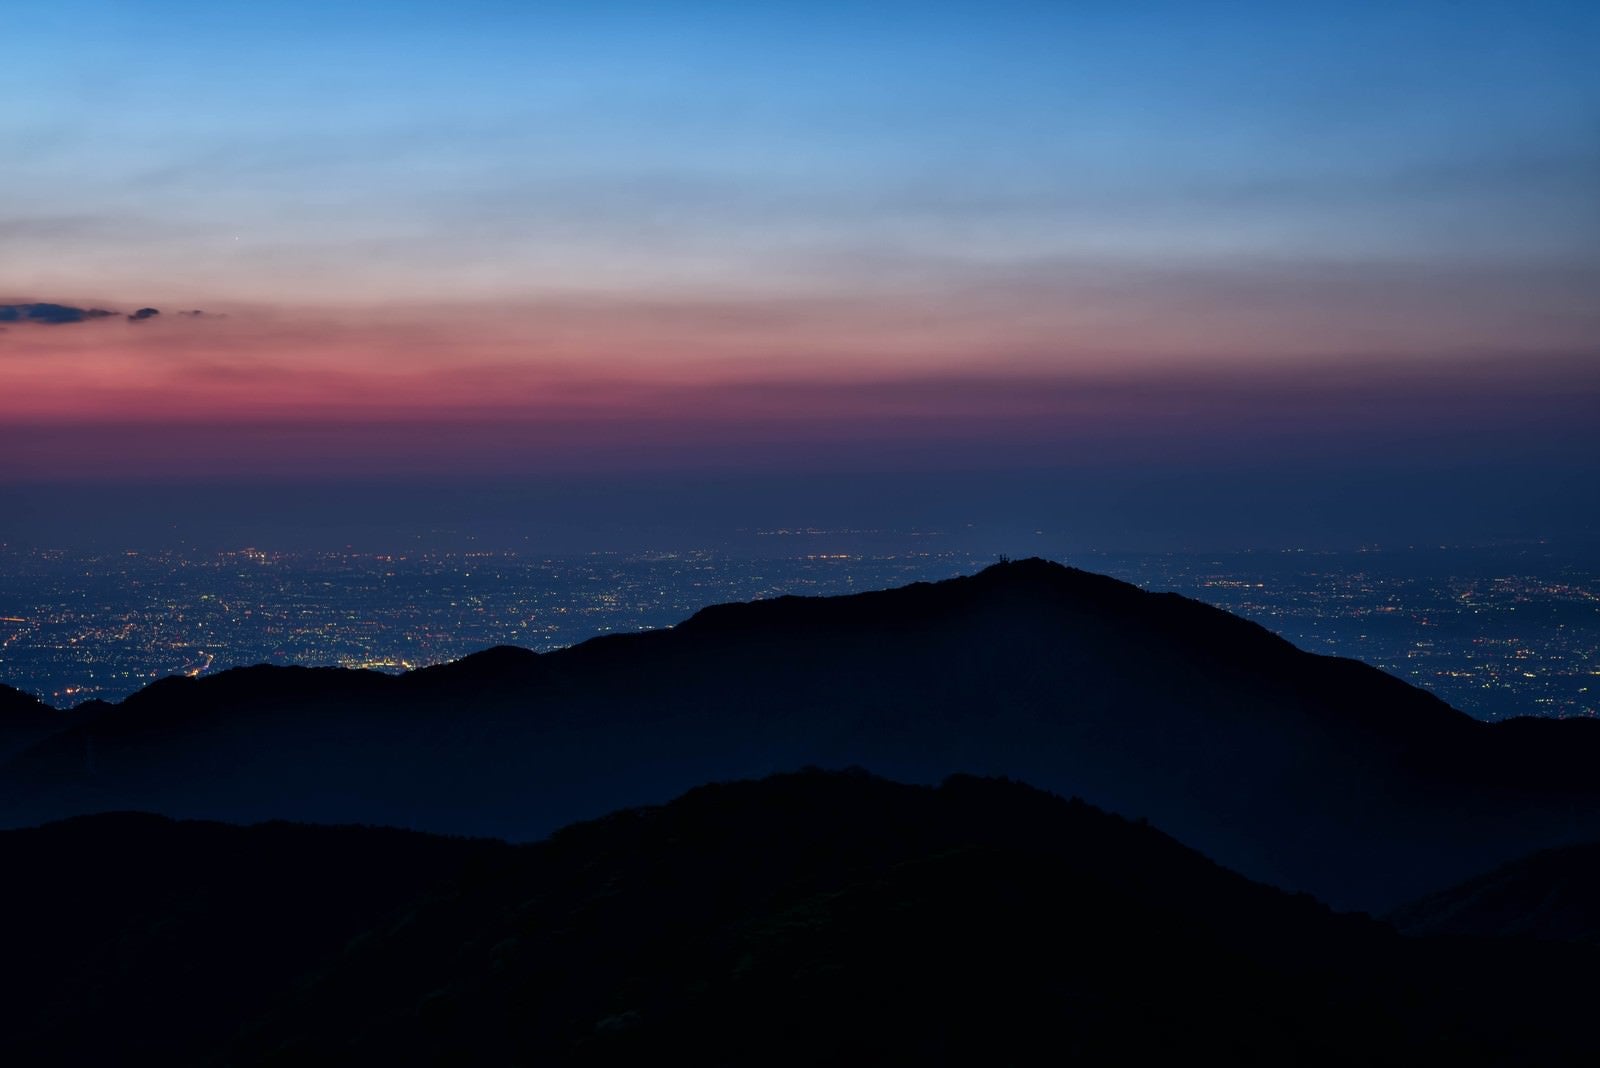 「大山のシルエットと眼下に広がる街の夜景」の写真